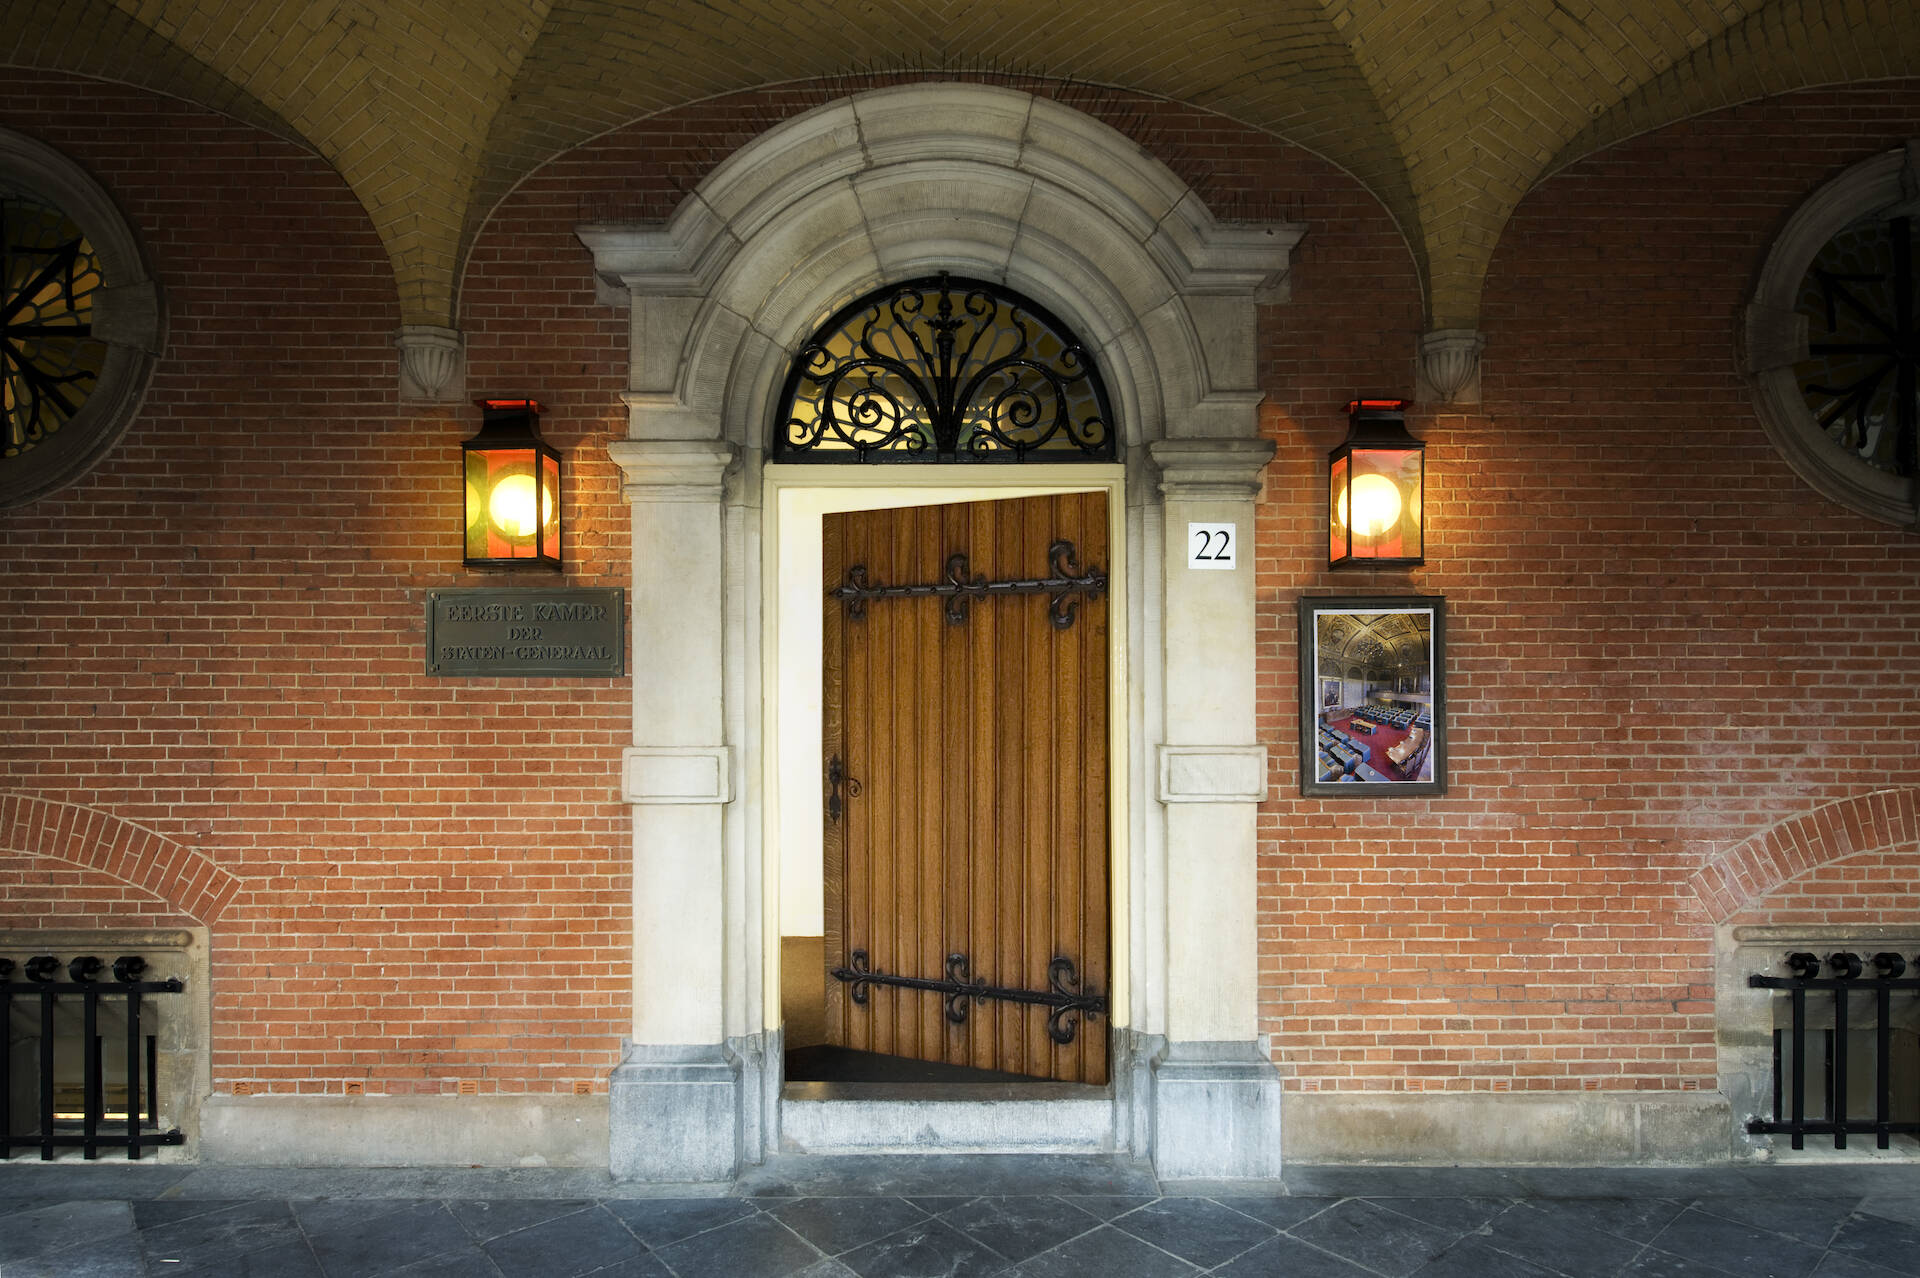 Ingang van de Eerste Kamer aan het Binnenhof in Den Haag